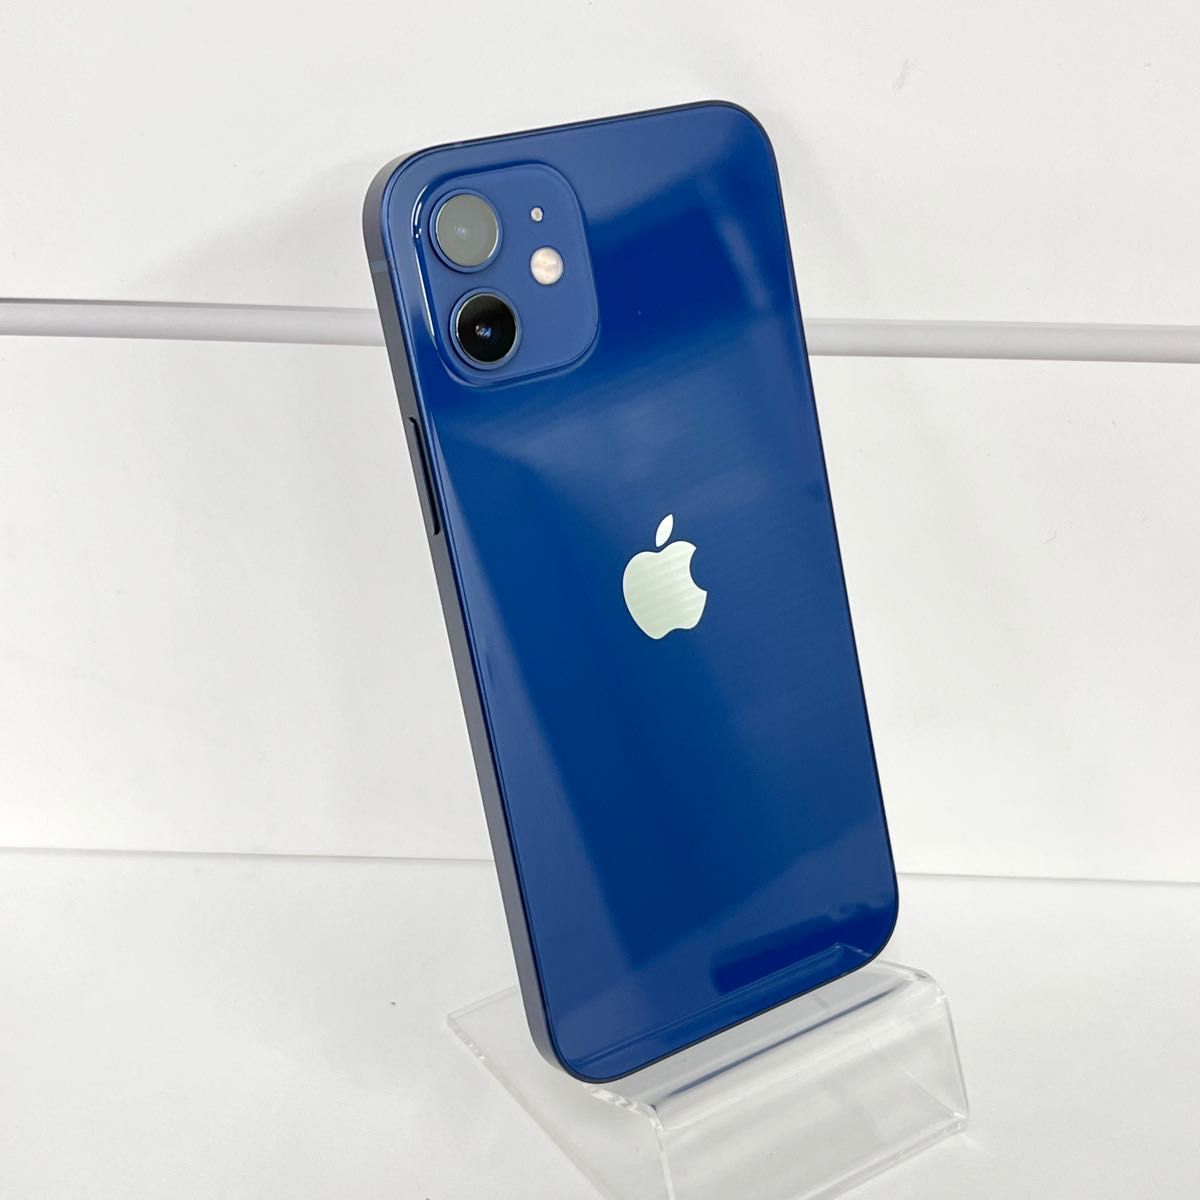 「ほぼ未使用」Apple iPhone 12 64GB ブルー ソフトバンクデモ機